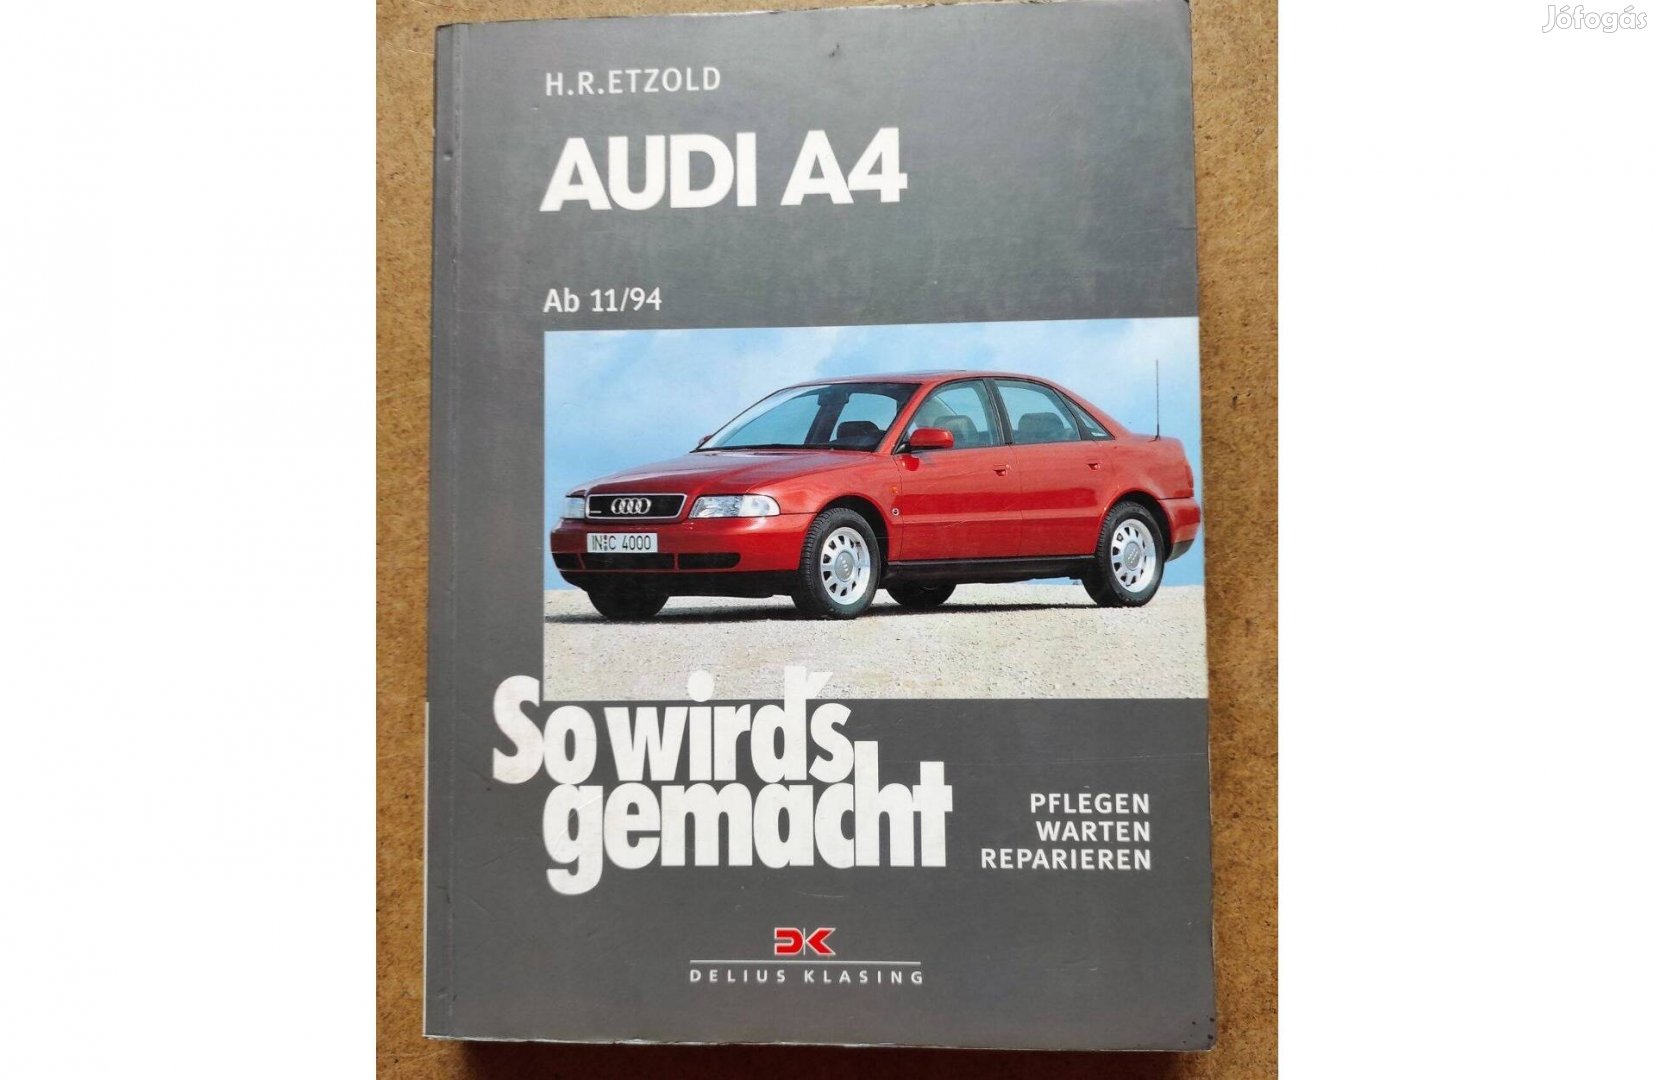 Audi A 4 javítási karbantartási könyv